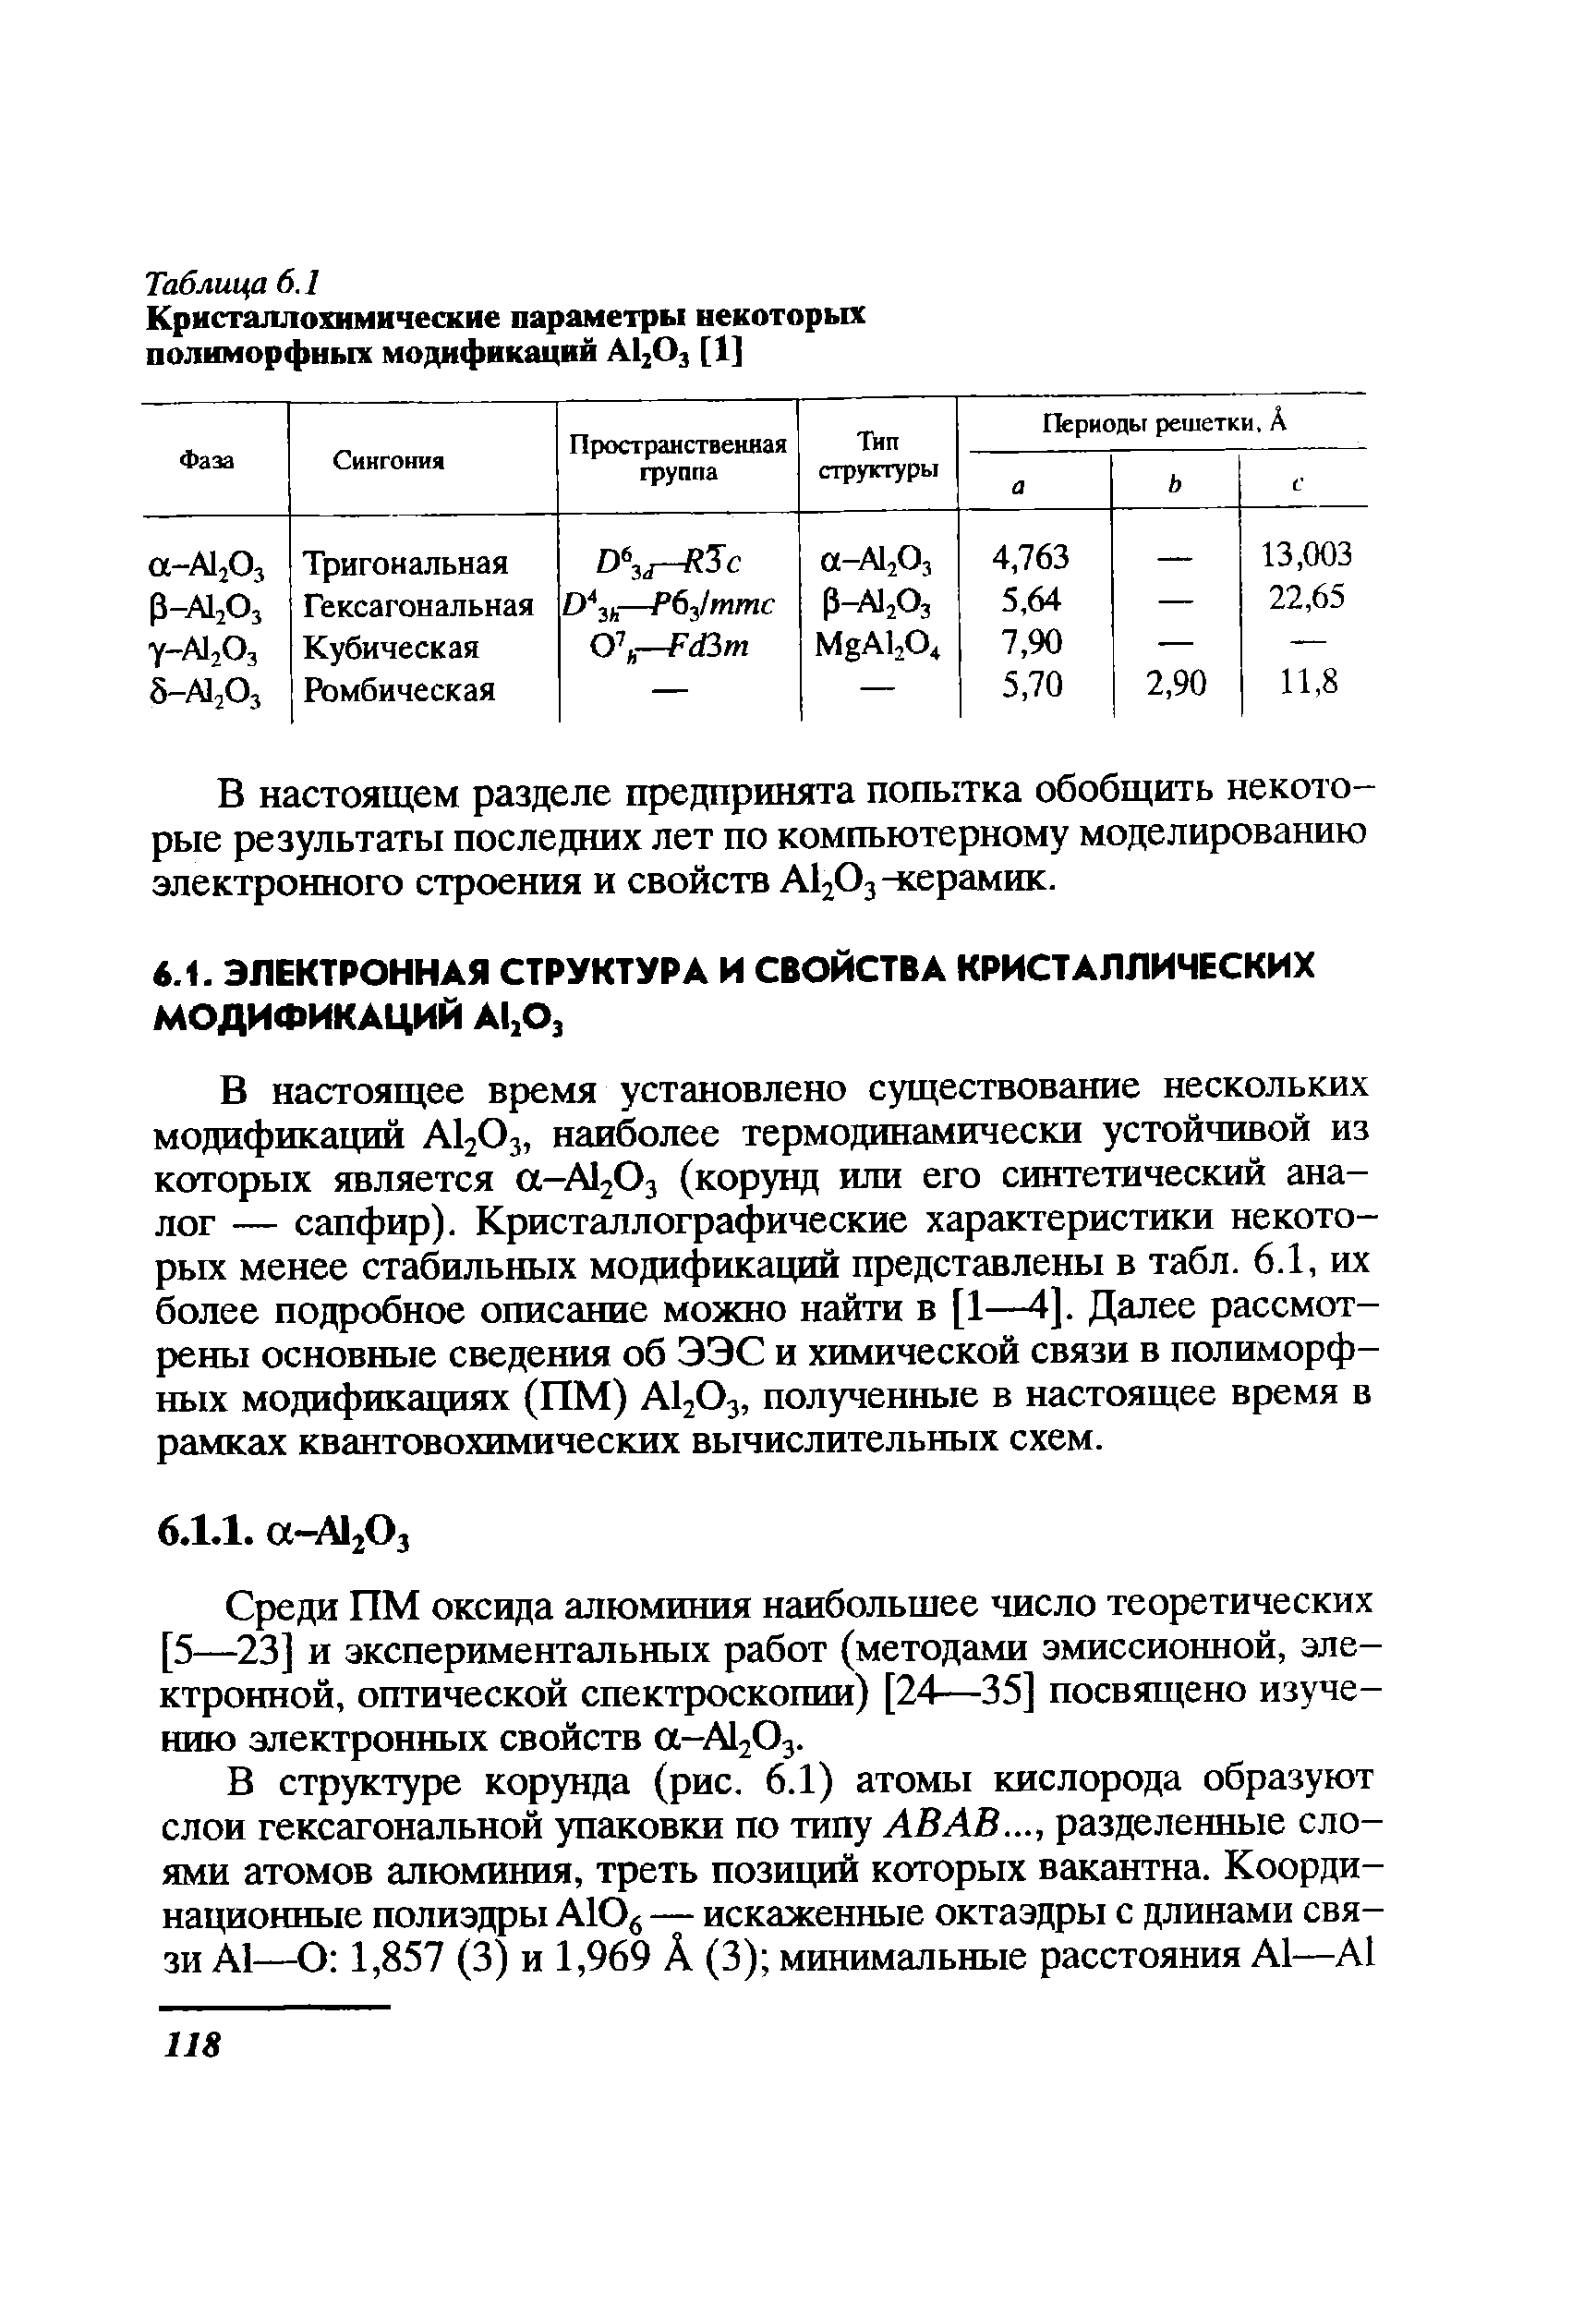 Среди ПМ оксида алюминия наибольшее число теоретических [5—23] и экспериментальных работ (методами эмиссионной, электронной, оптической спектроскопии) [24—35] посвящено изучению электронных свойств а-А120з.